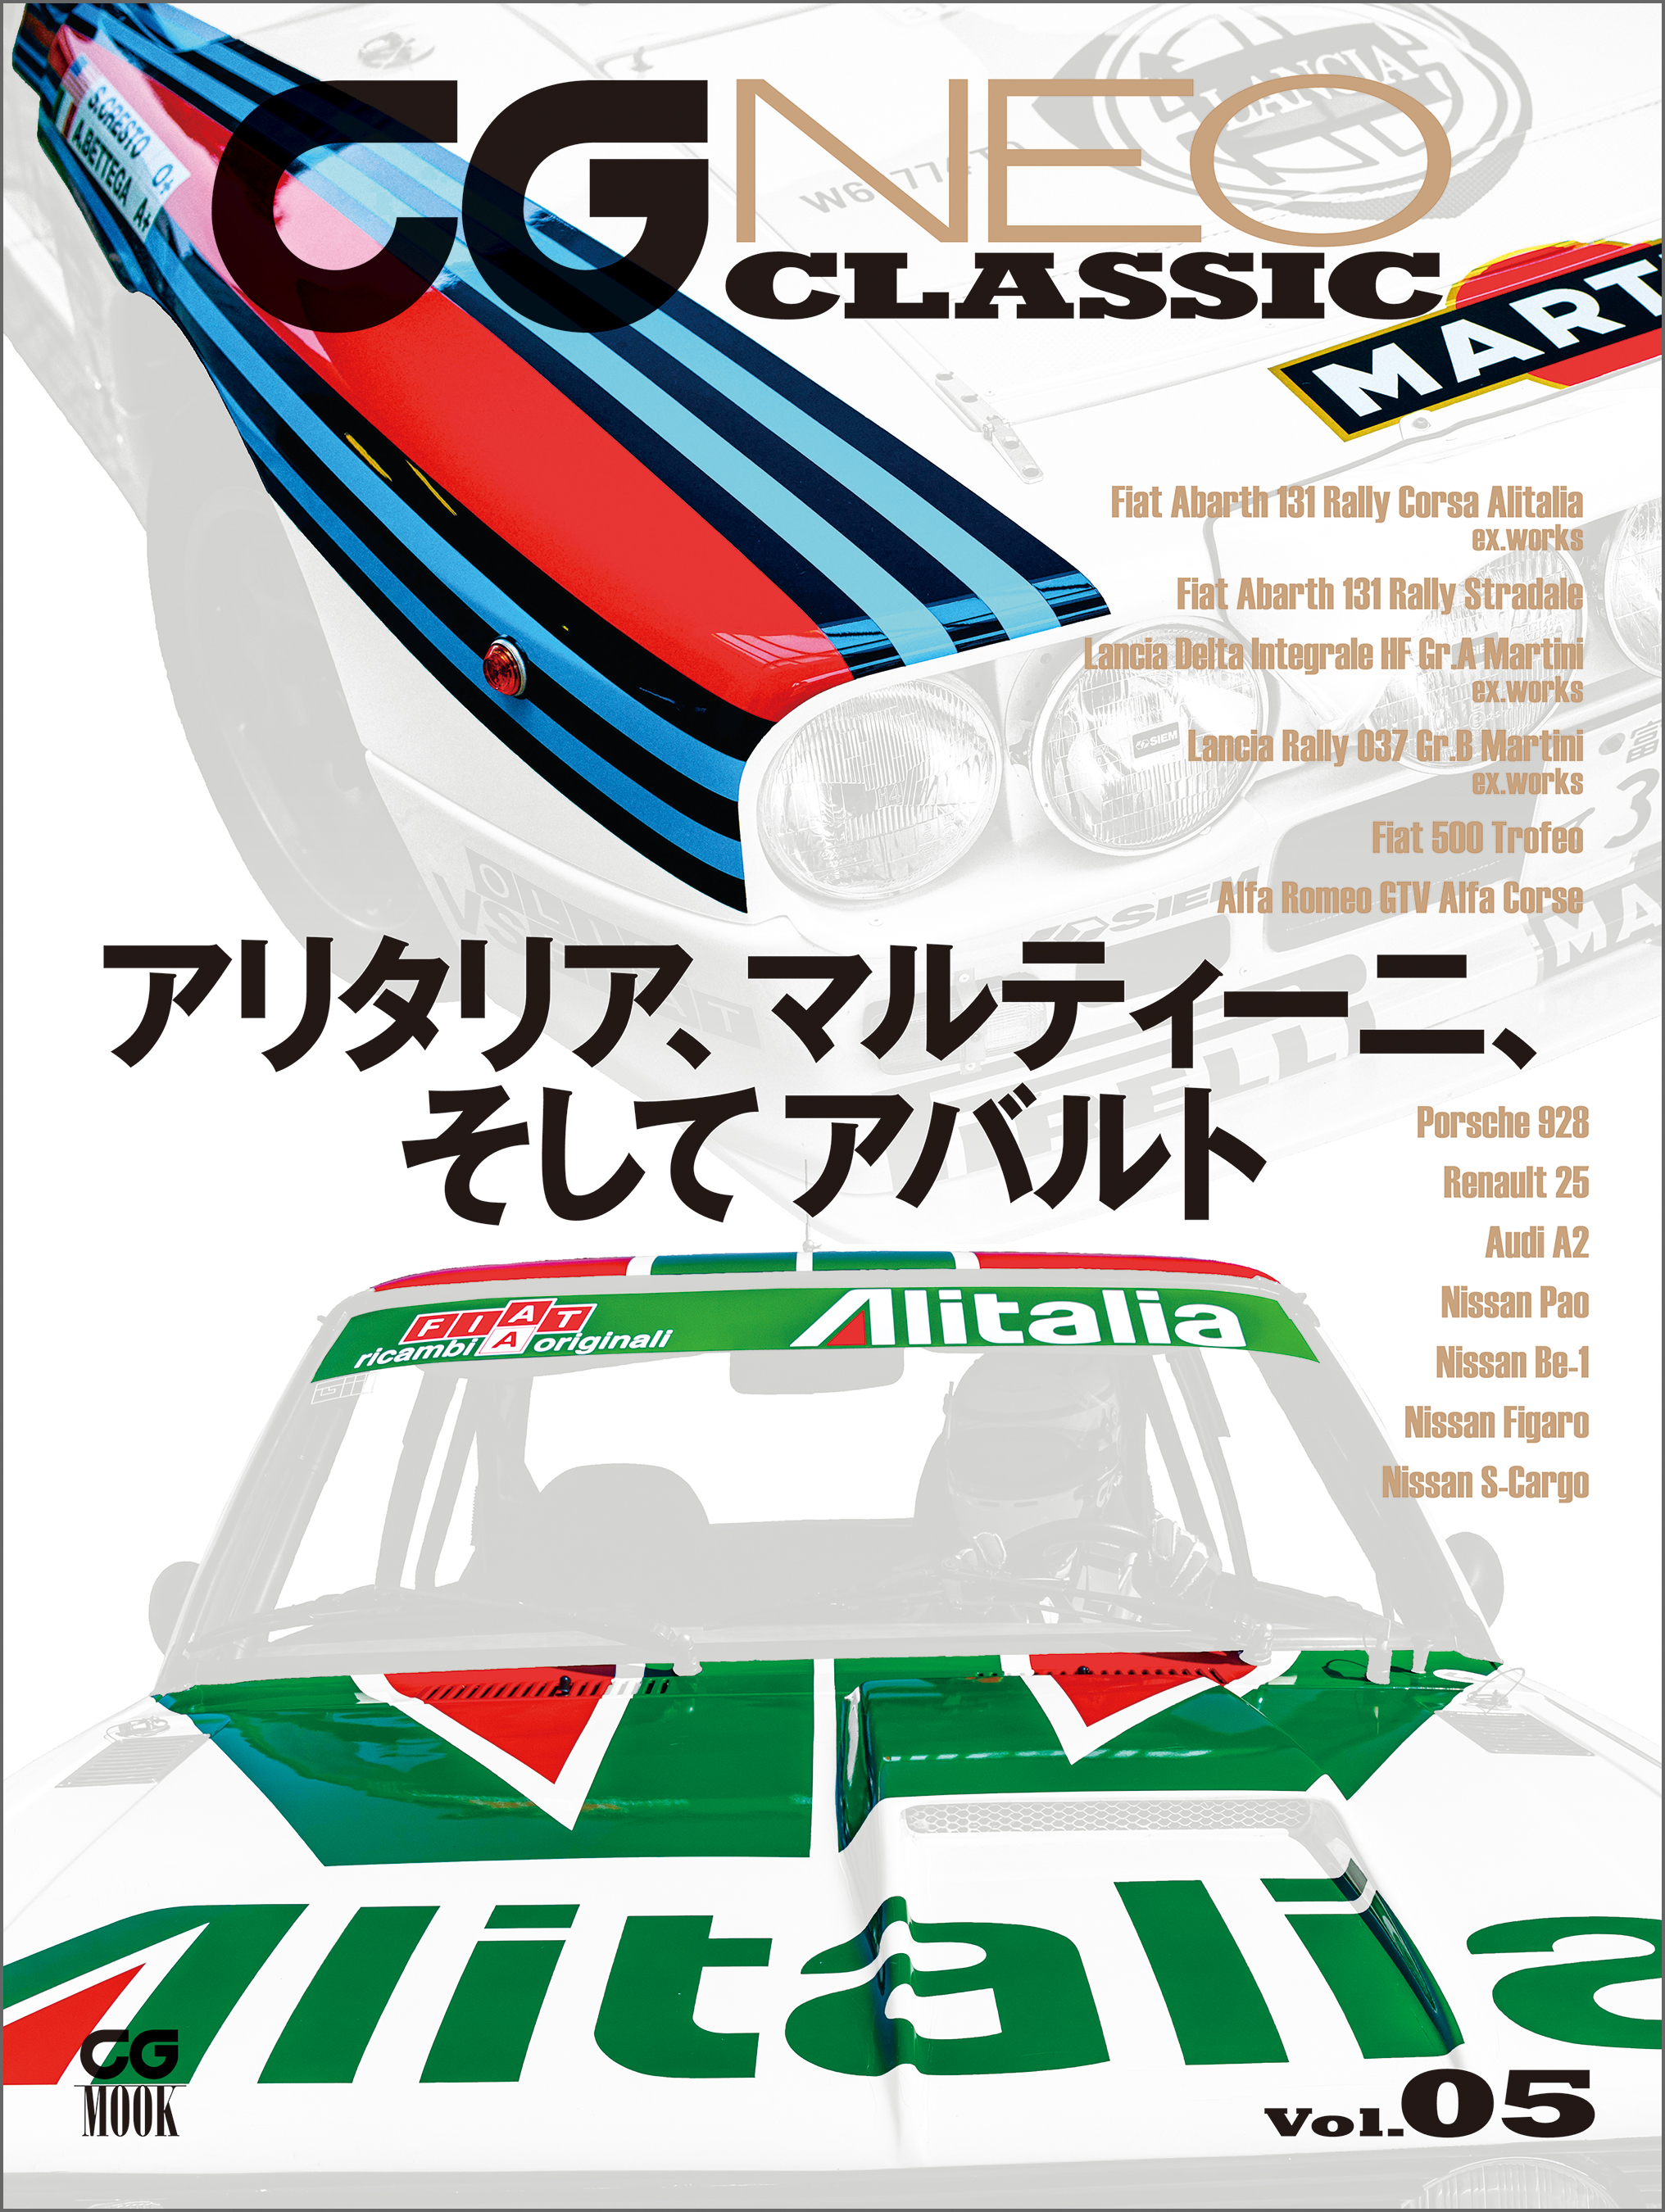 CG NEO CLASSIC Vol.05 アリタリア、マルティーニ、そしてアバルト - カーグラフィック編集部 -  漫画・無料試し読みなら、電子書籍ストア ブックライブ